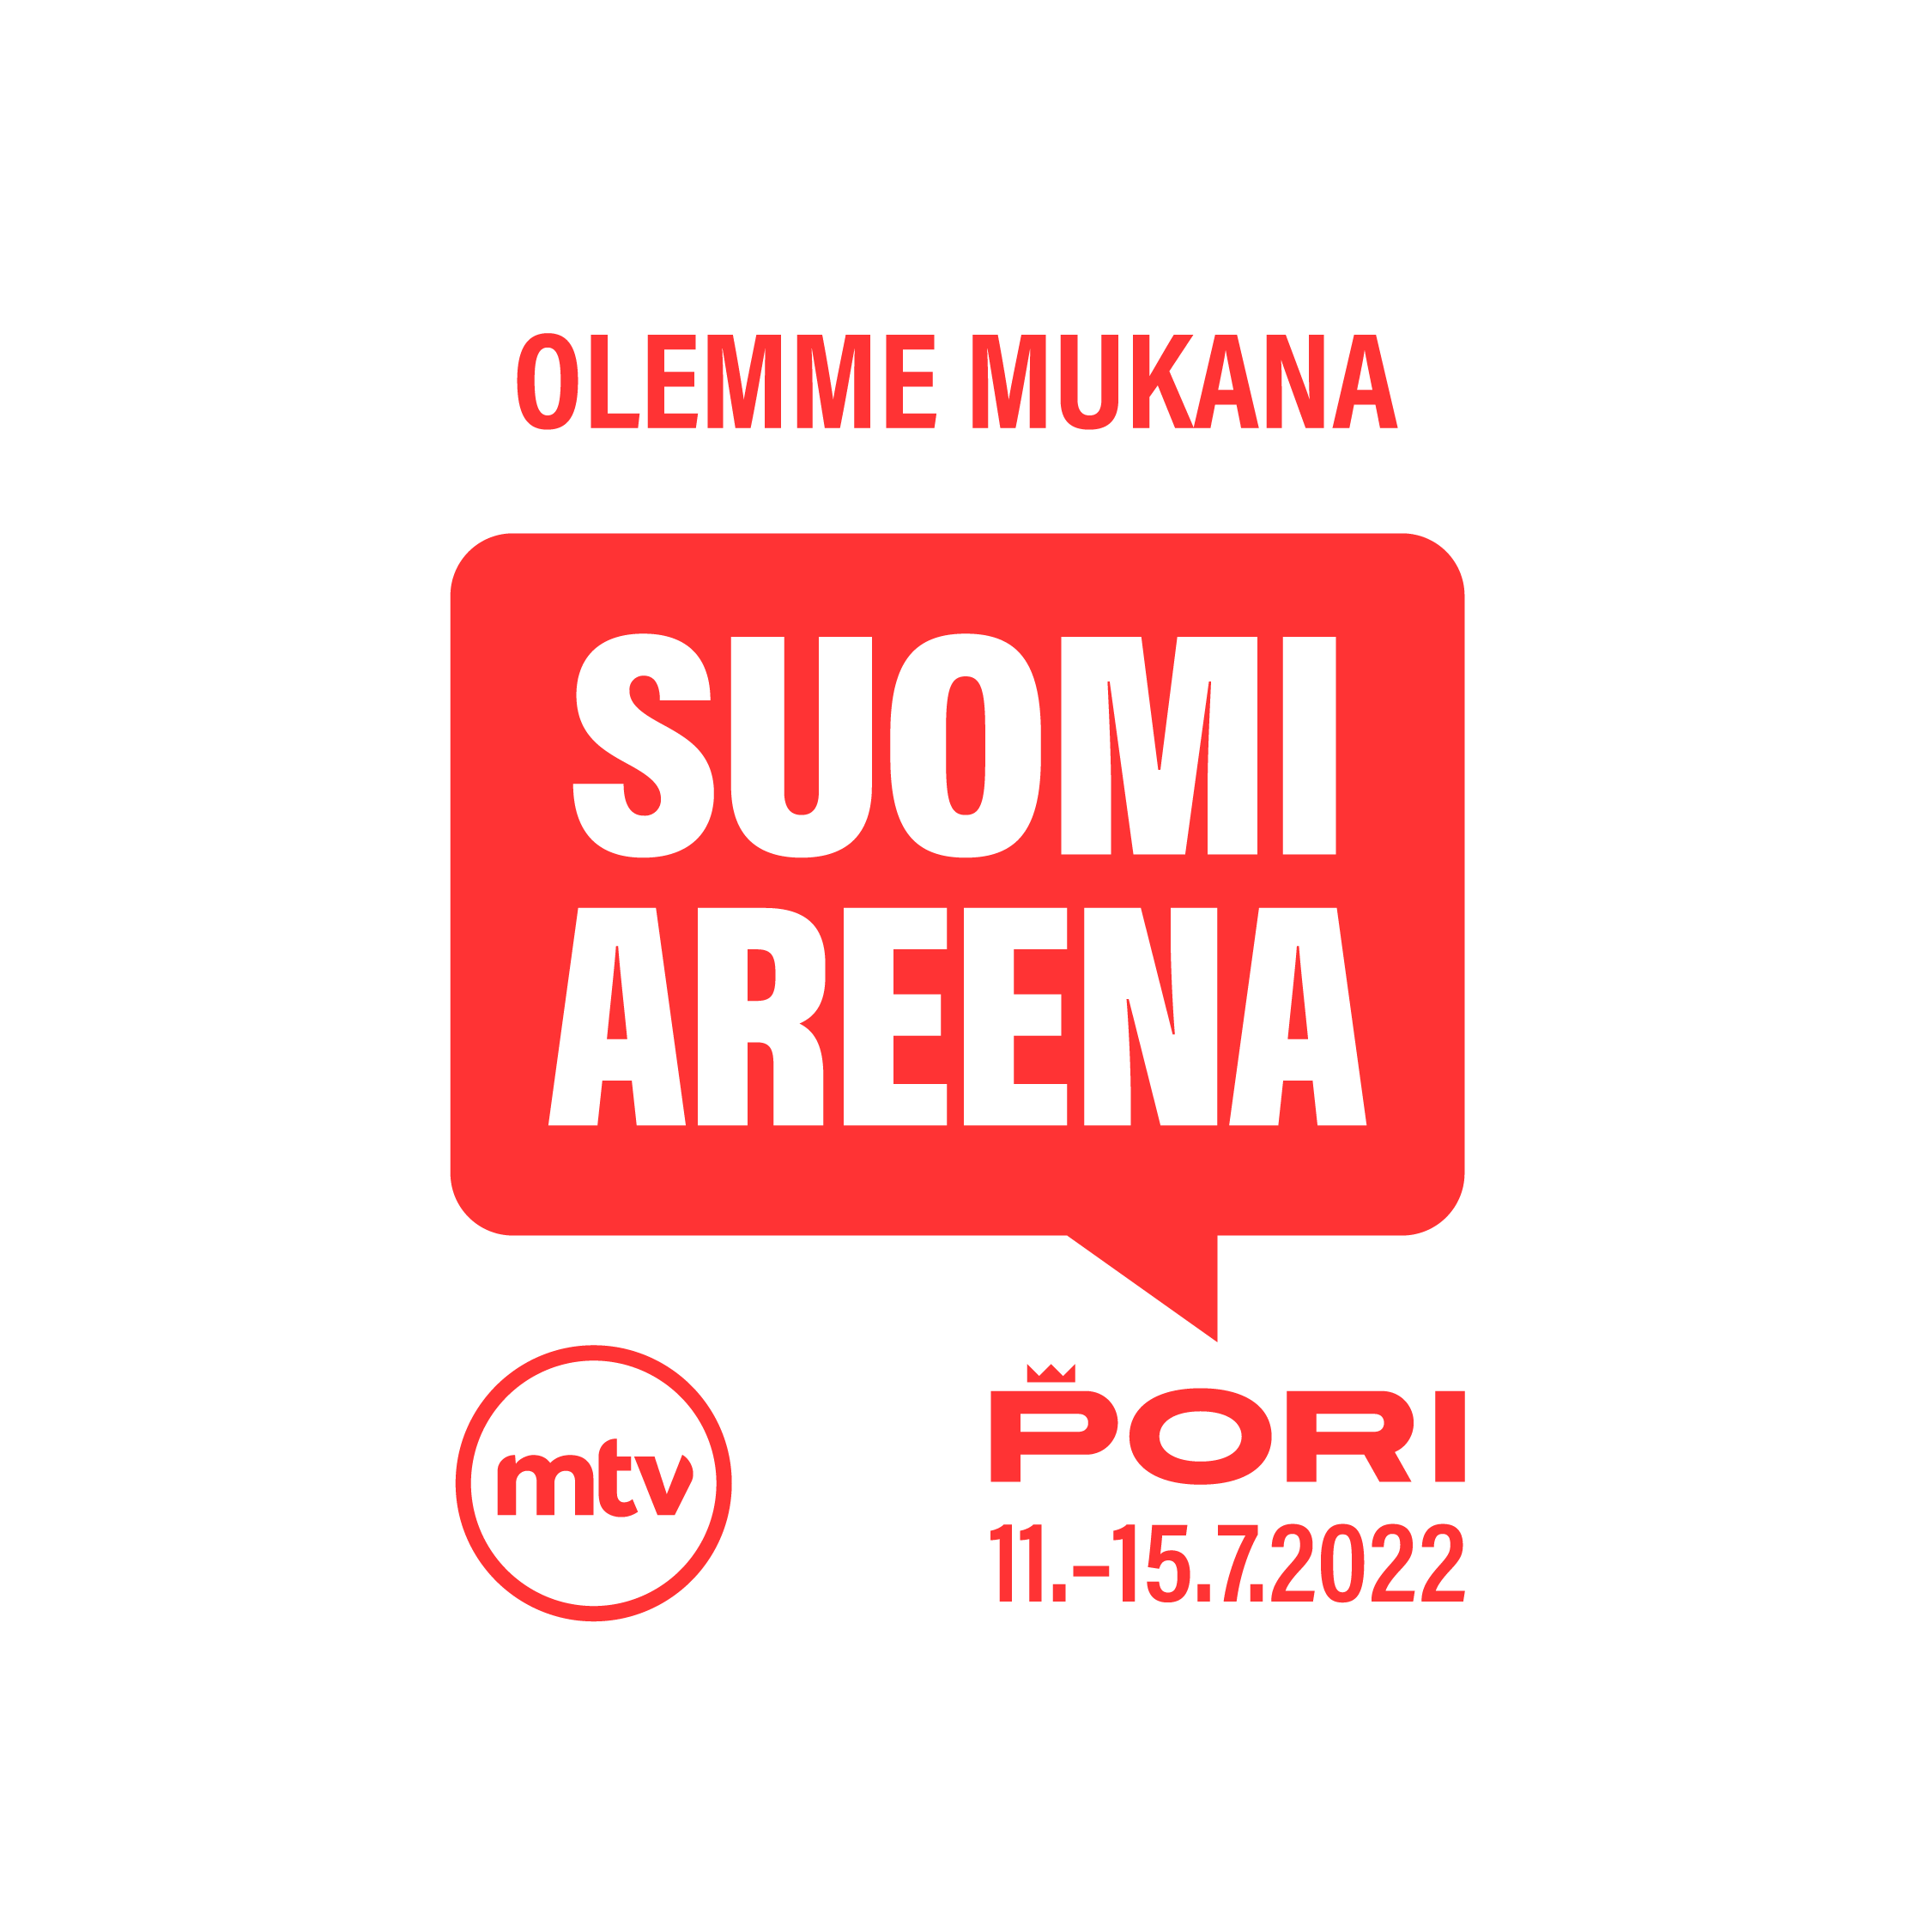 Olemme mukana SuomiAreenassa, Pori 11.-15.7.2022.